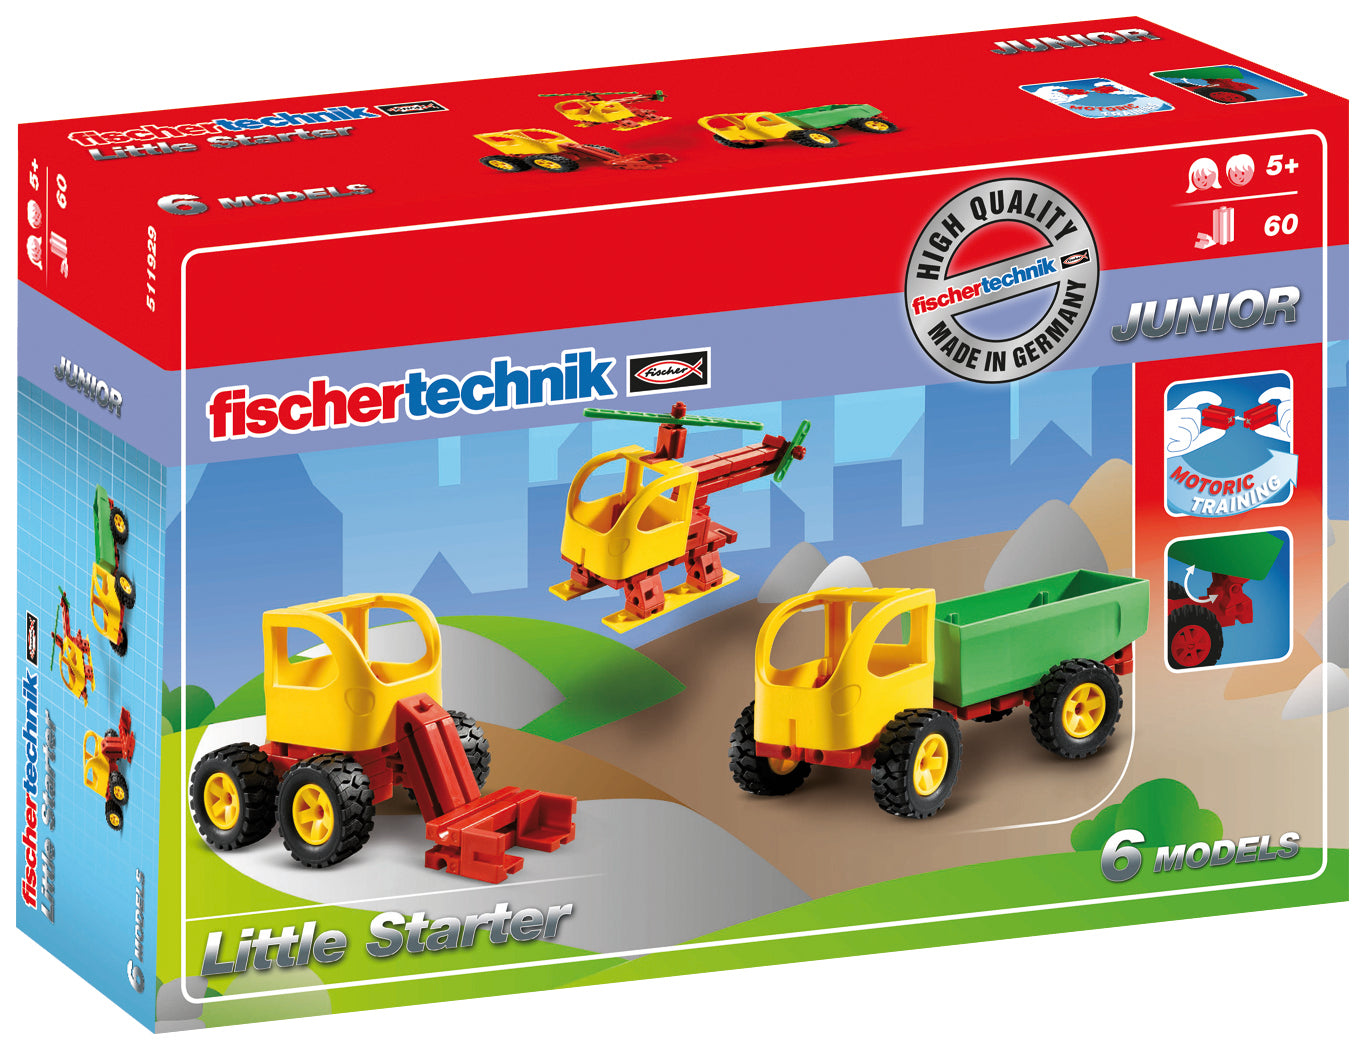 Fischertechnik Junior - Little Starter - 511929